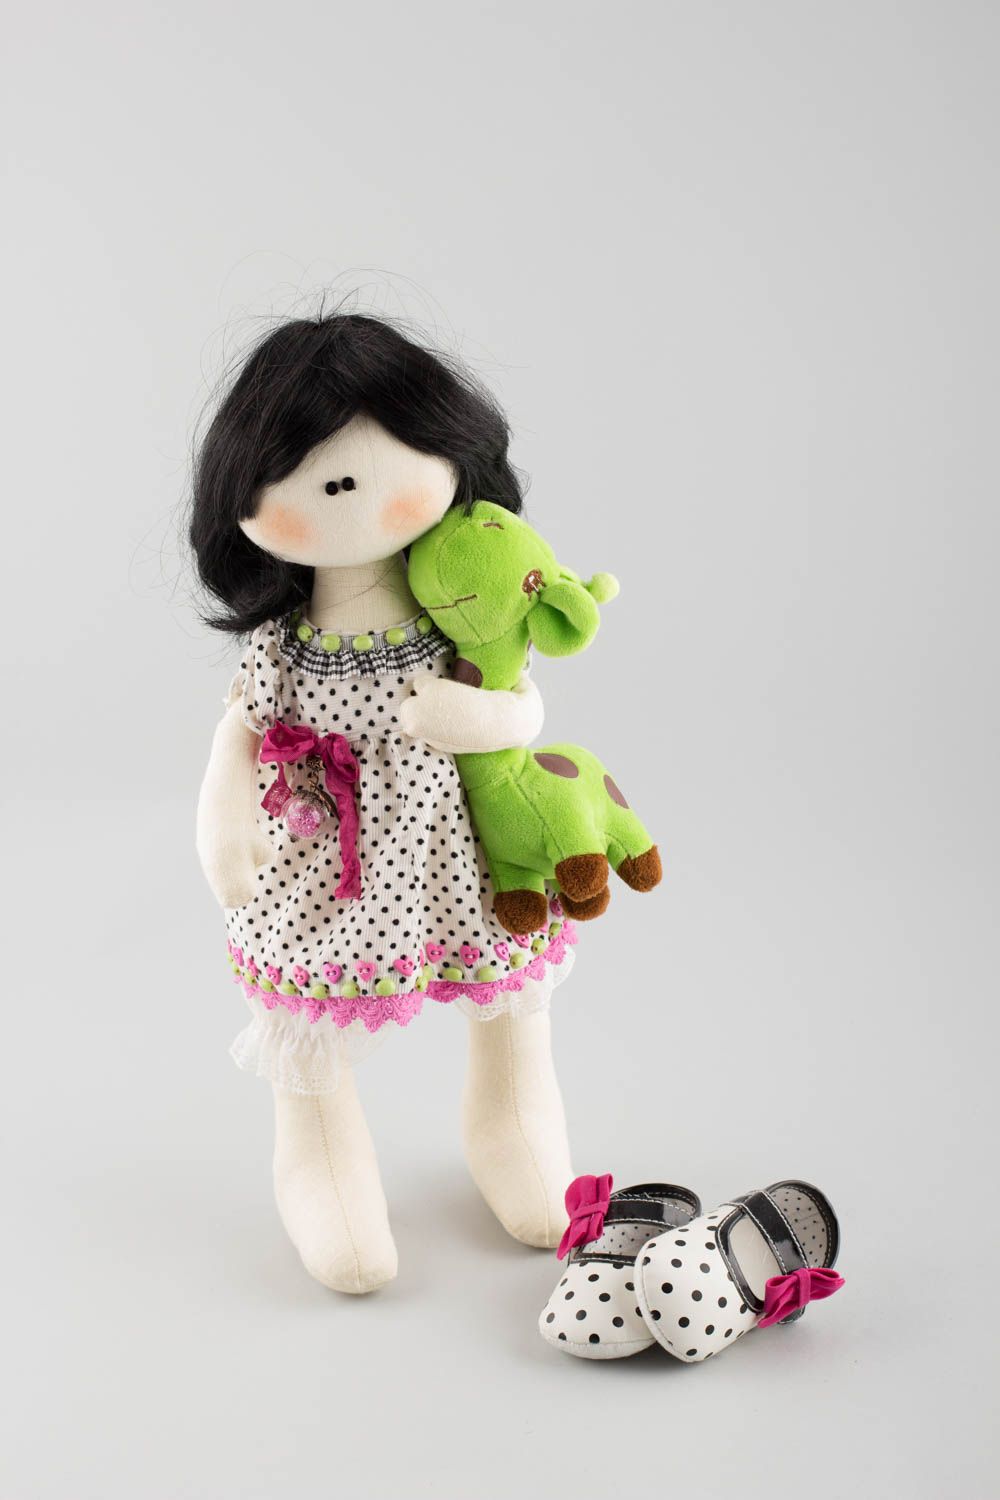 Игрушка для ребенка из натуральных материалов ручной работы Кукла с жирафом фото 4